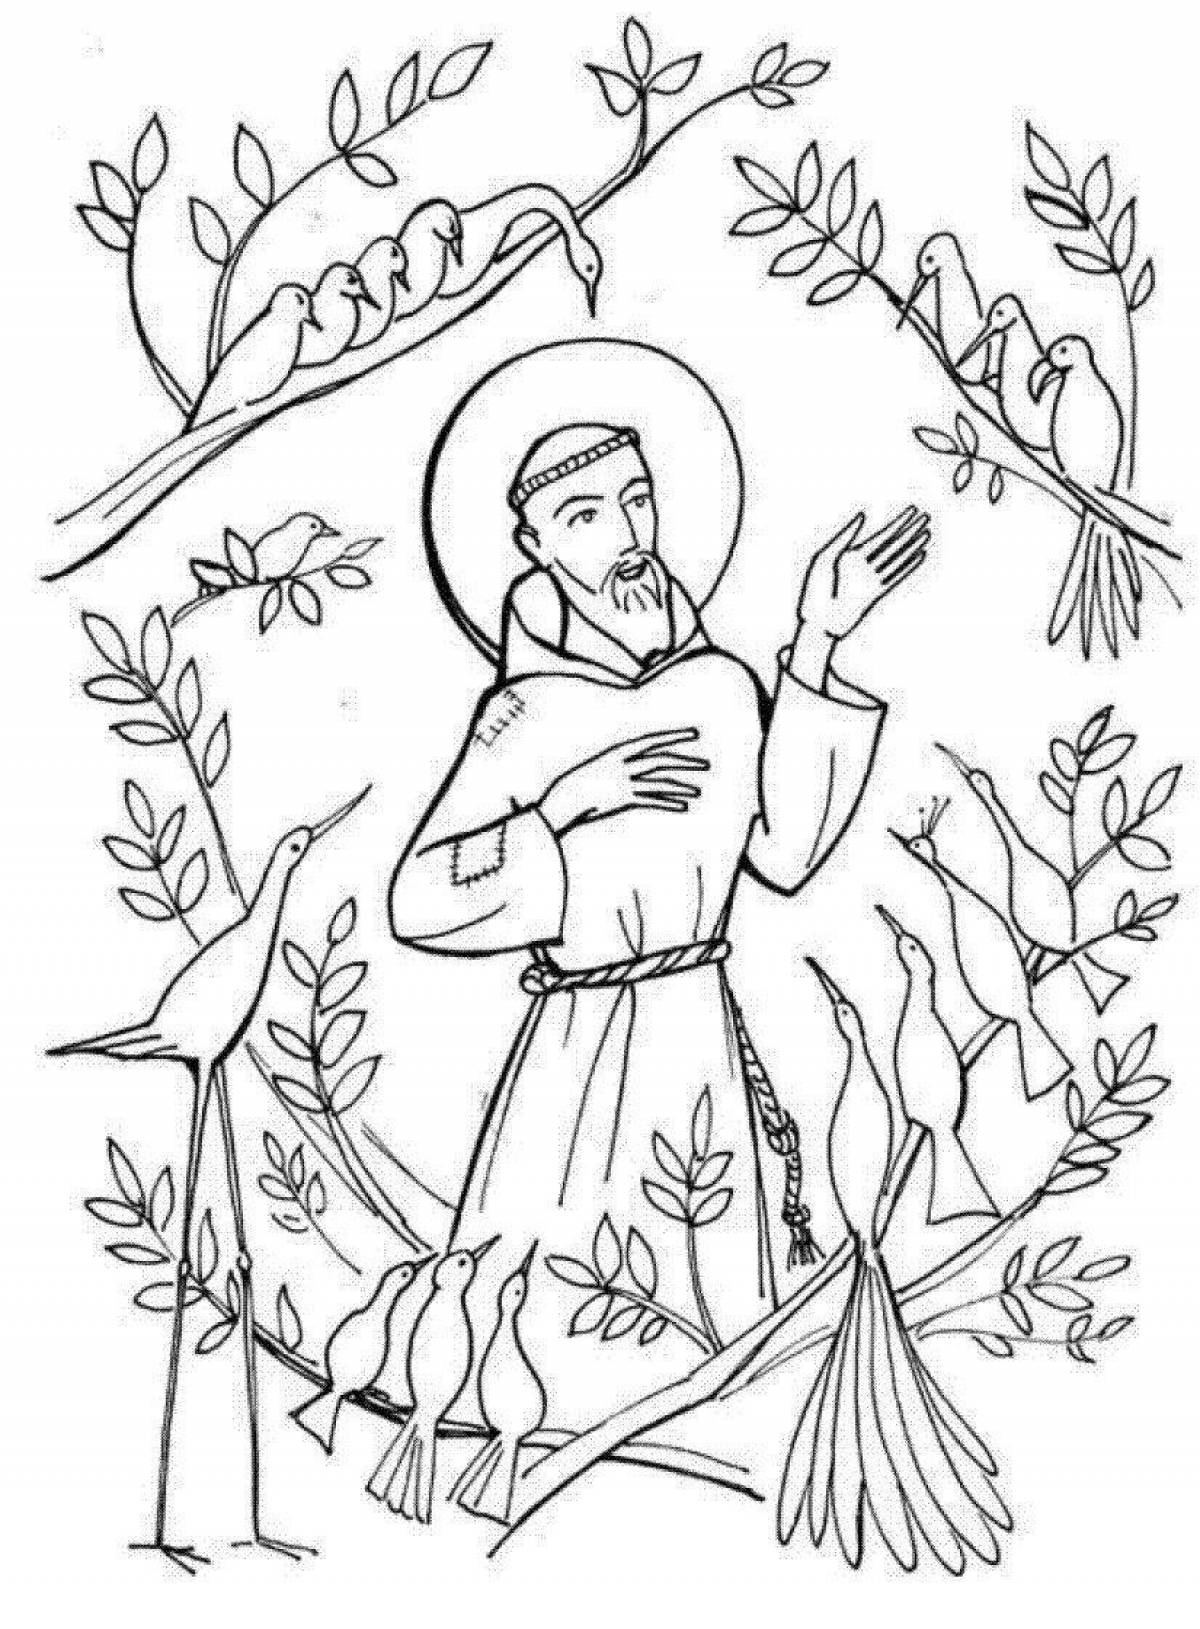 Impeccable saint coloring page